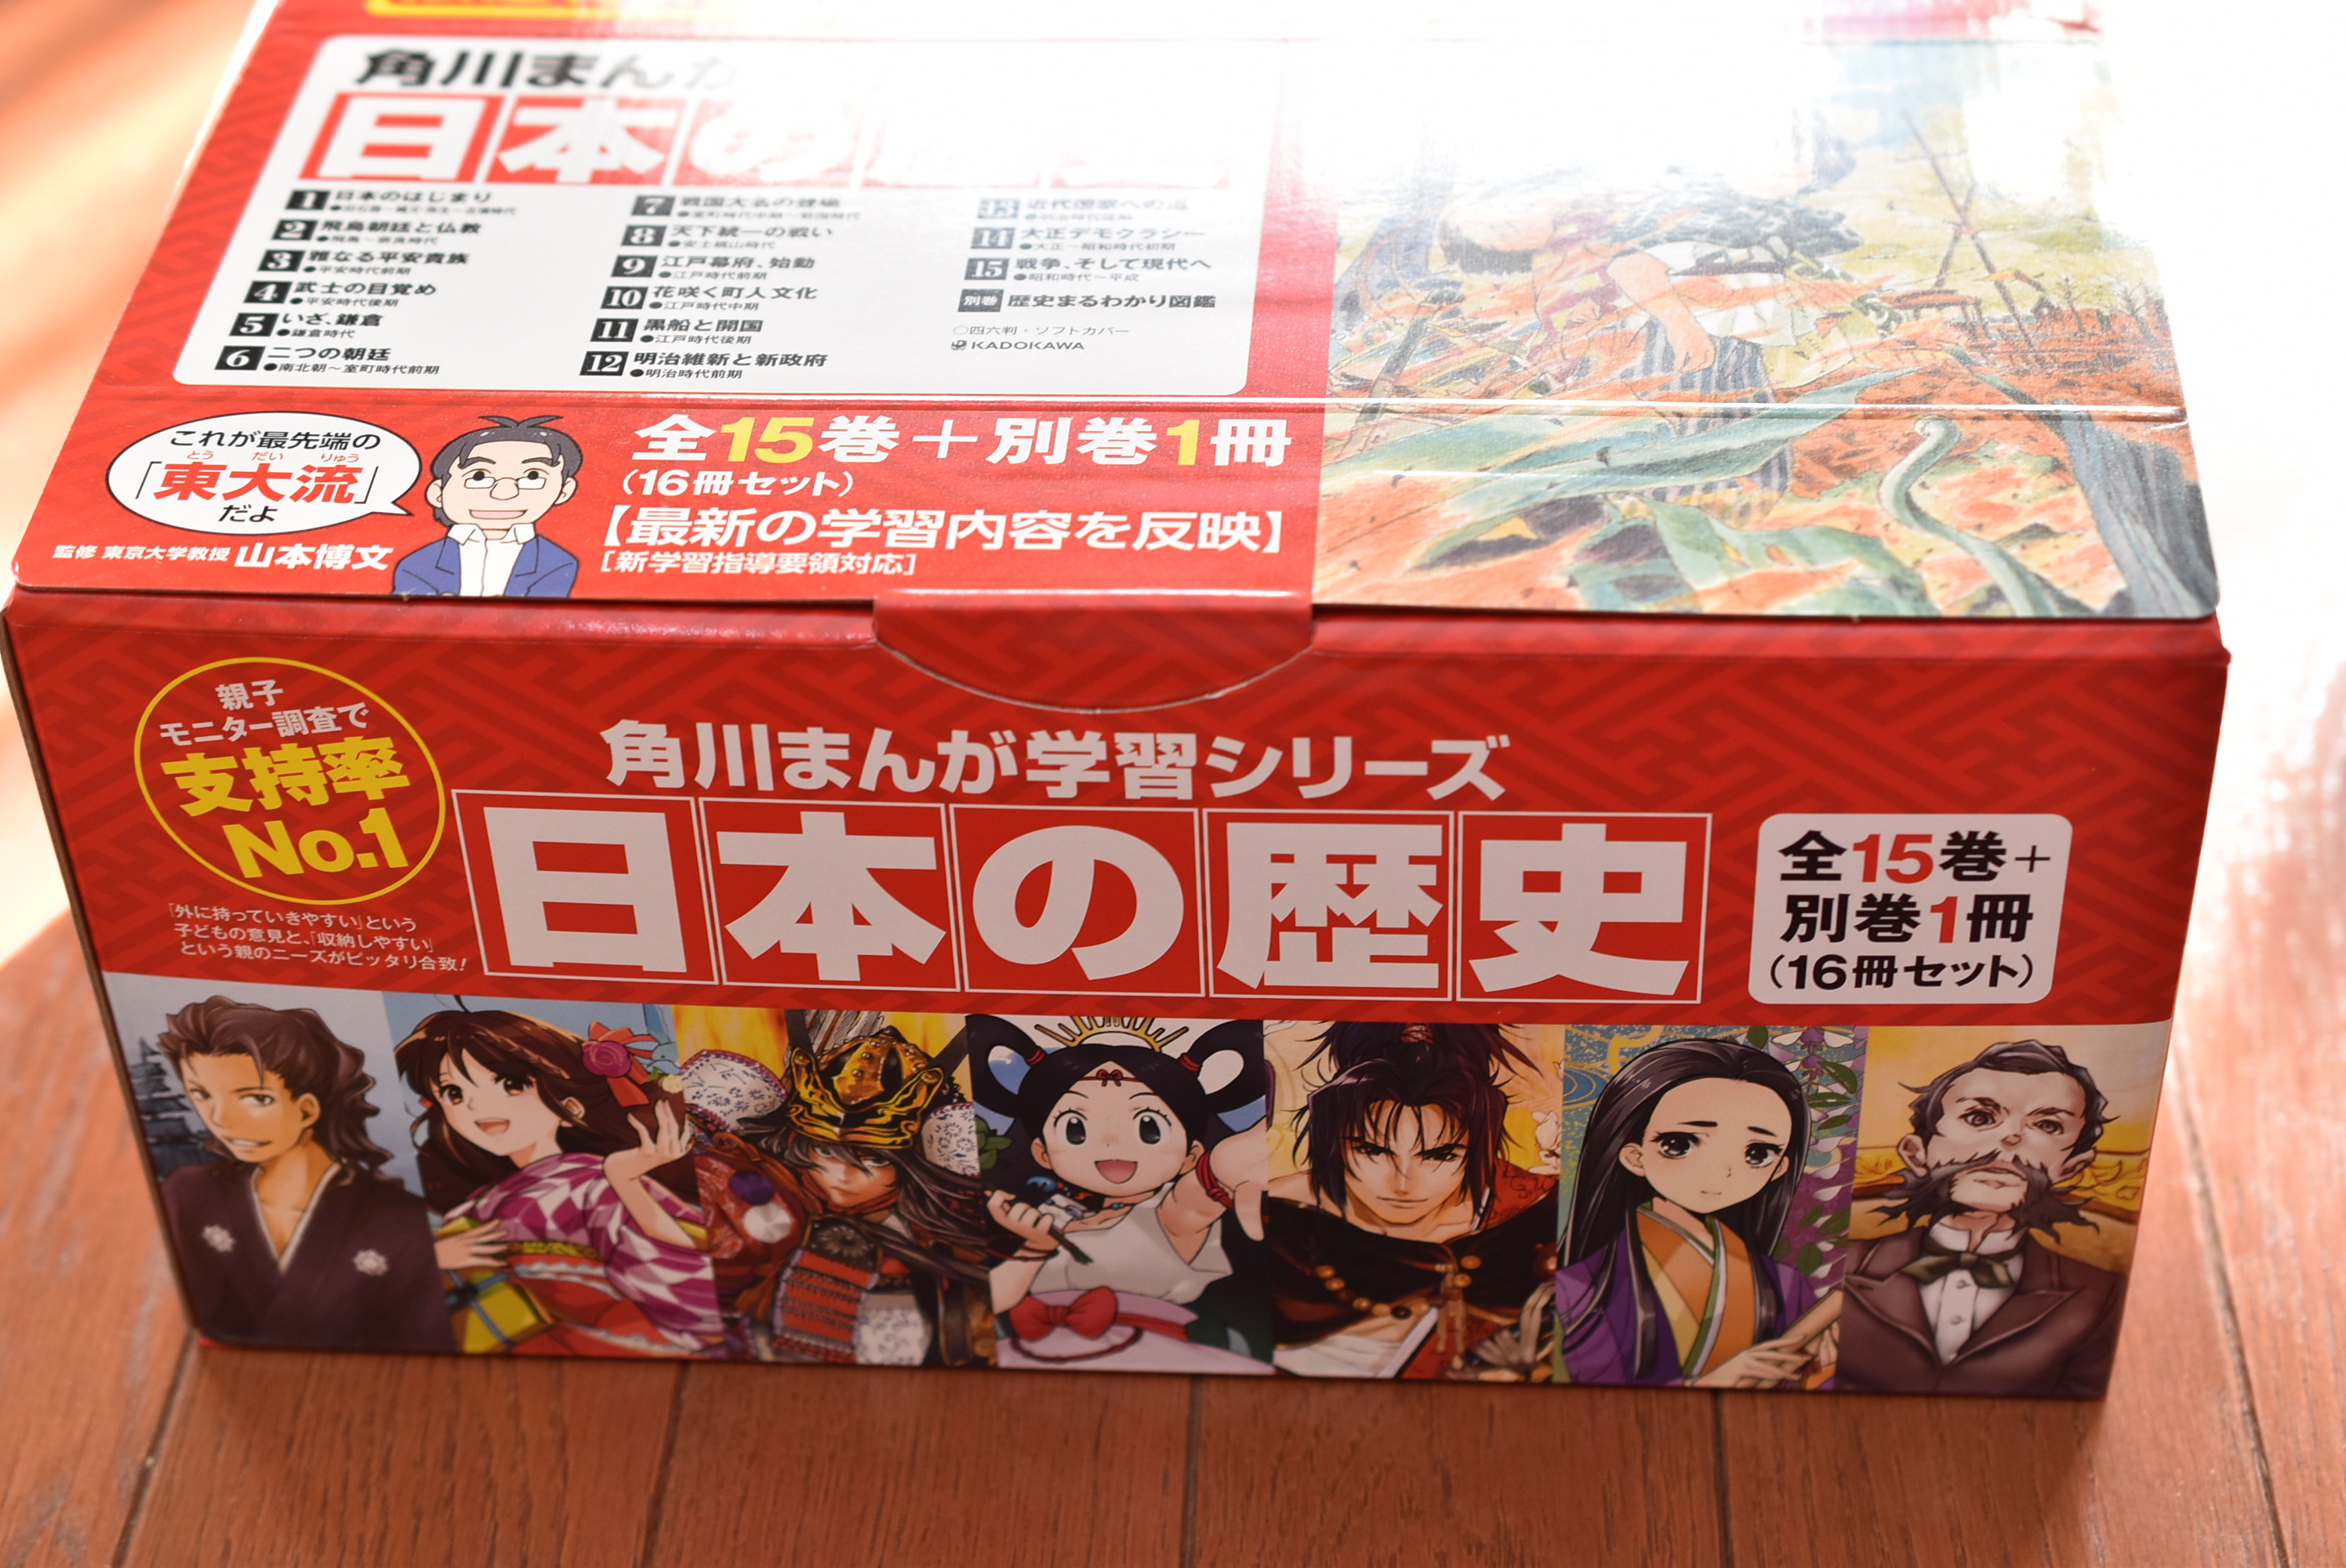 日本の歴史を漫画で学習を！」と思って全巻セットを買ってしまった僕 